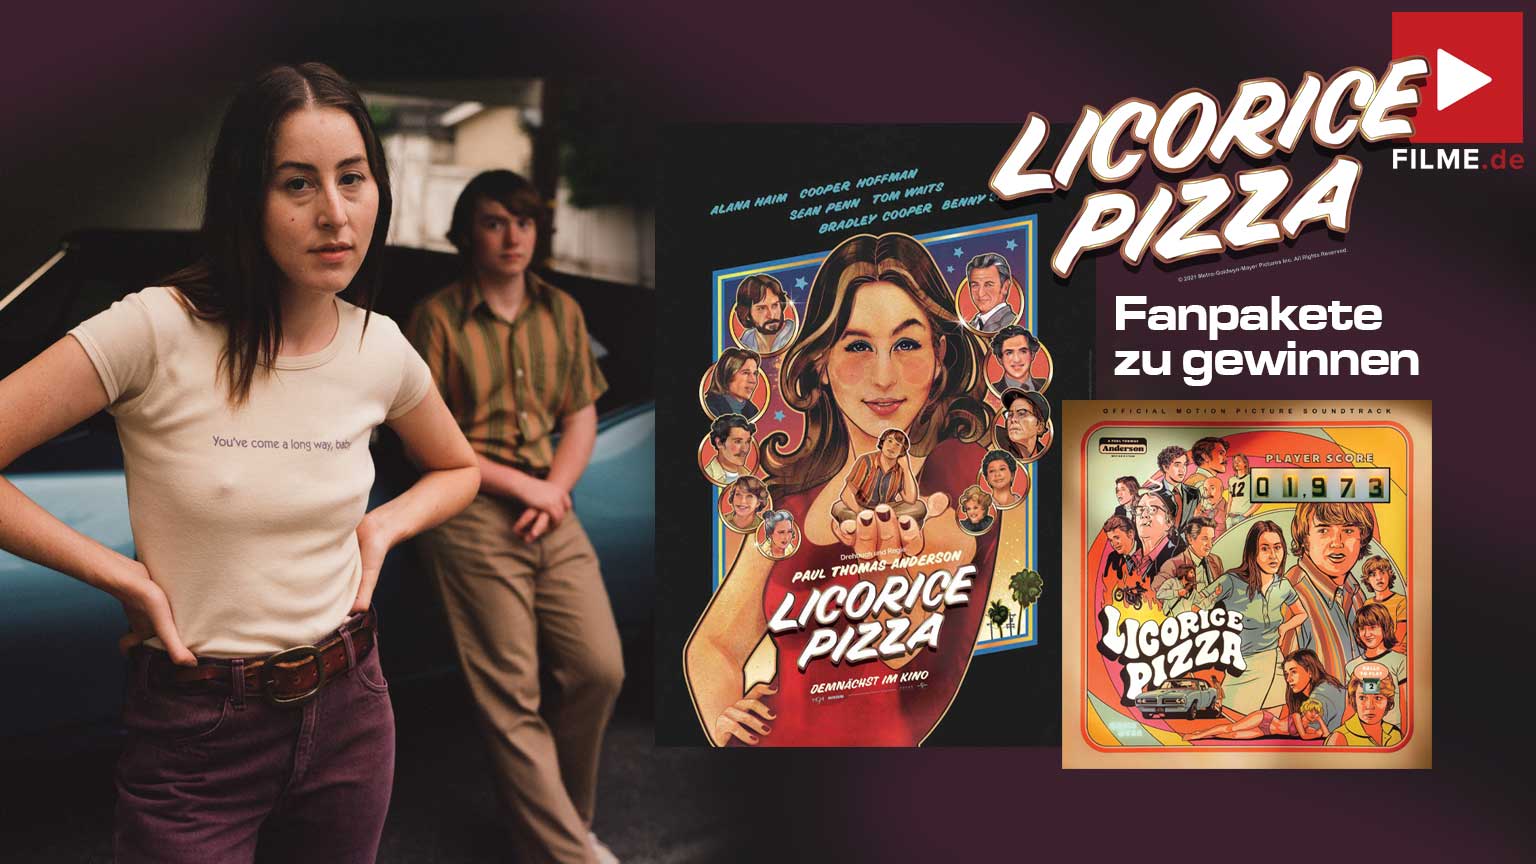 Licorice Pizza Film 2022 Kino Start Gewinnspiel gewinnen Artikelbild